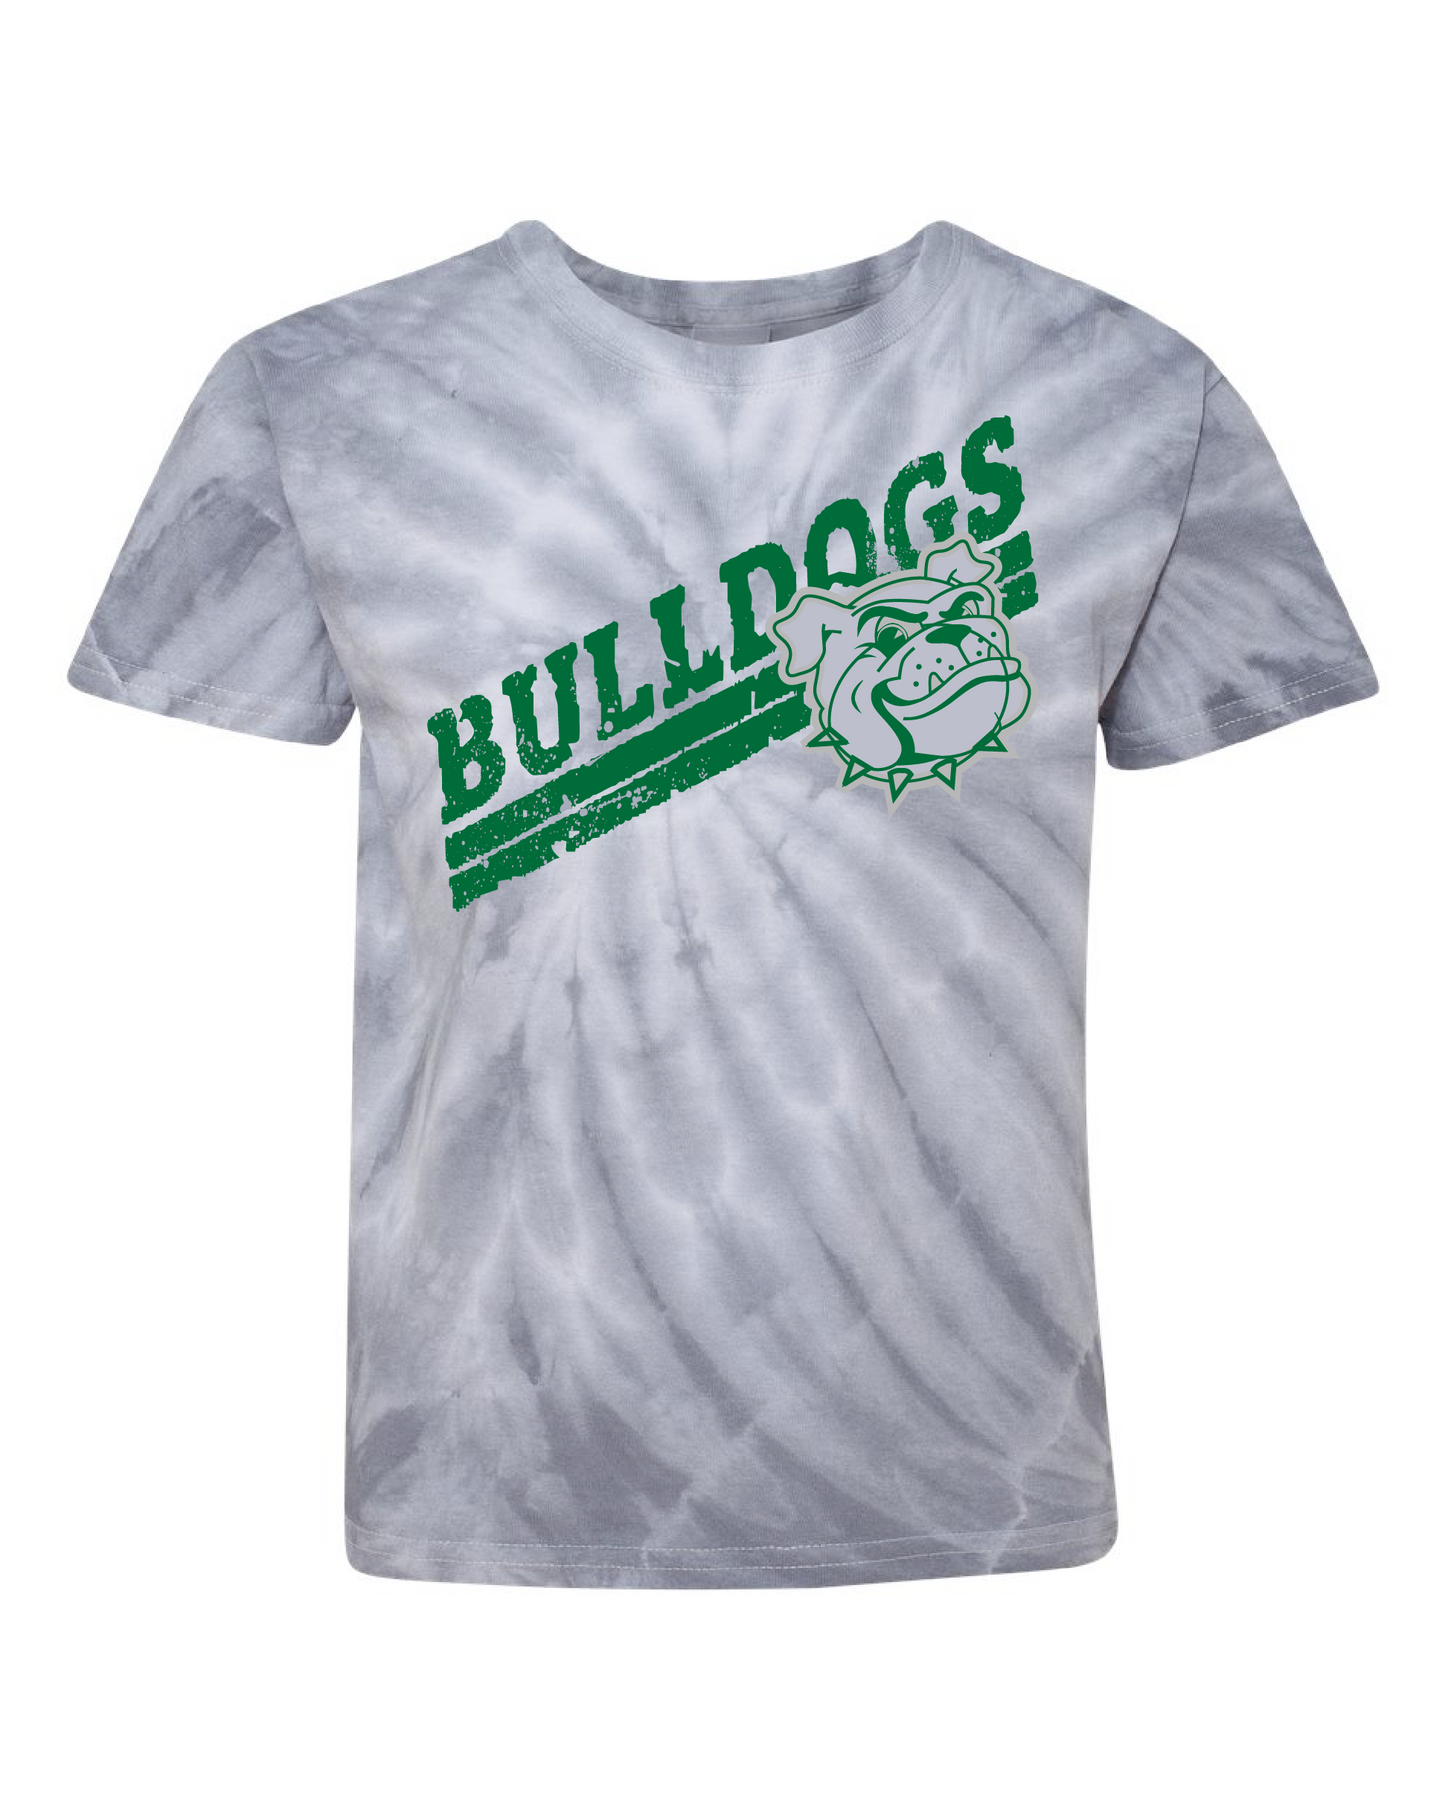 BTES - Striped Bulldog - Tie Dye T-Shirt. -- presale